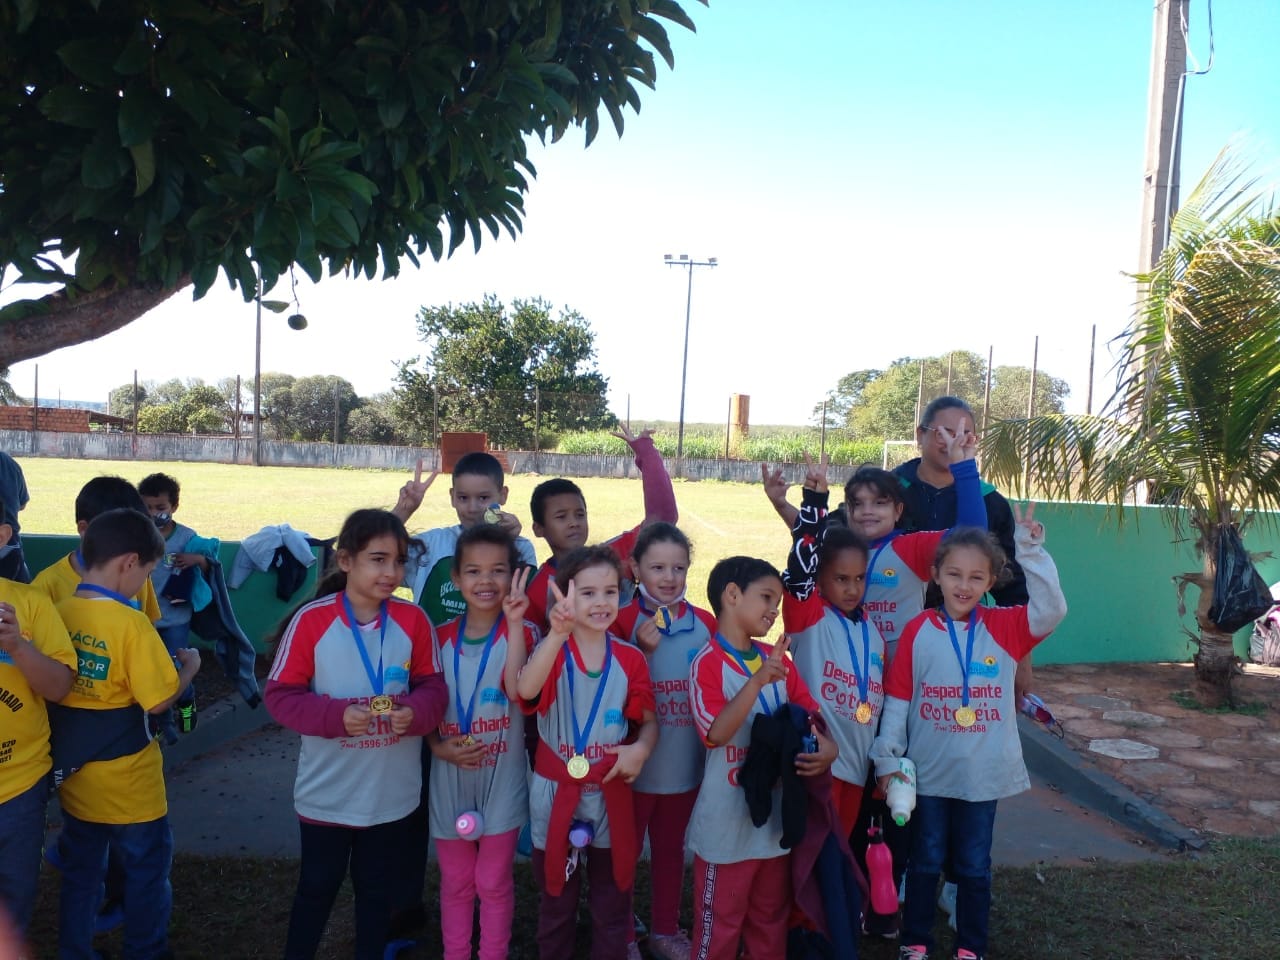  Veja o campeonato Inter Escolar primeiro evento realizado no clube adquirido pela Prefeitura